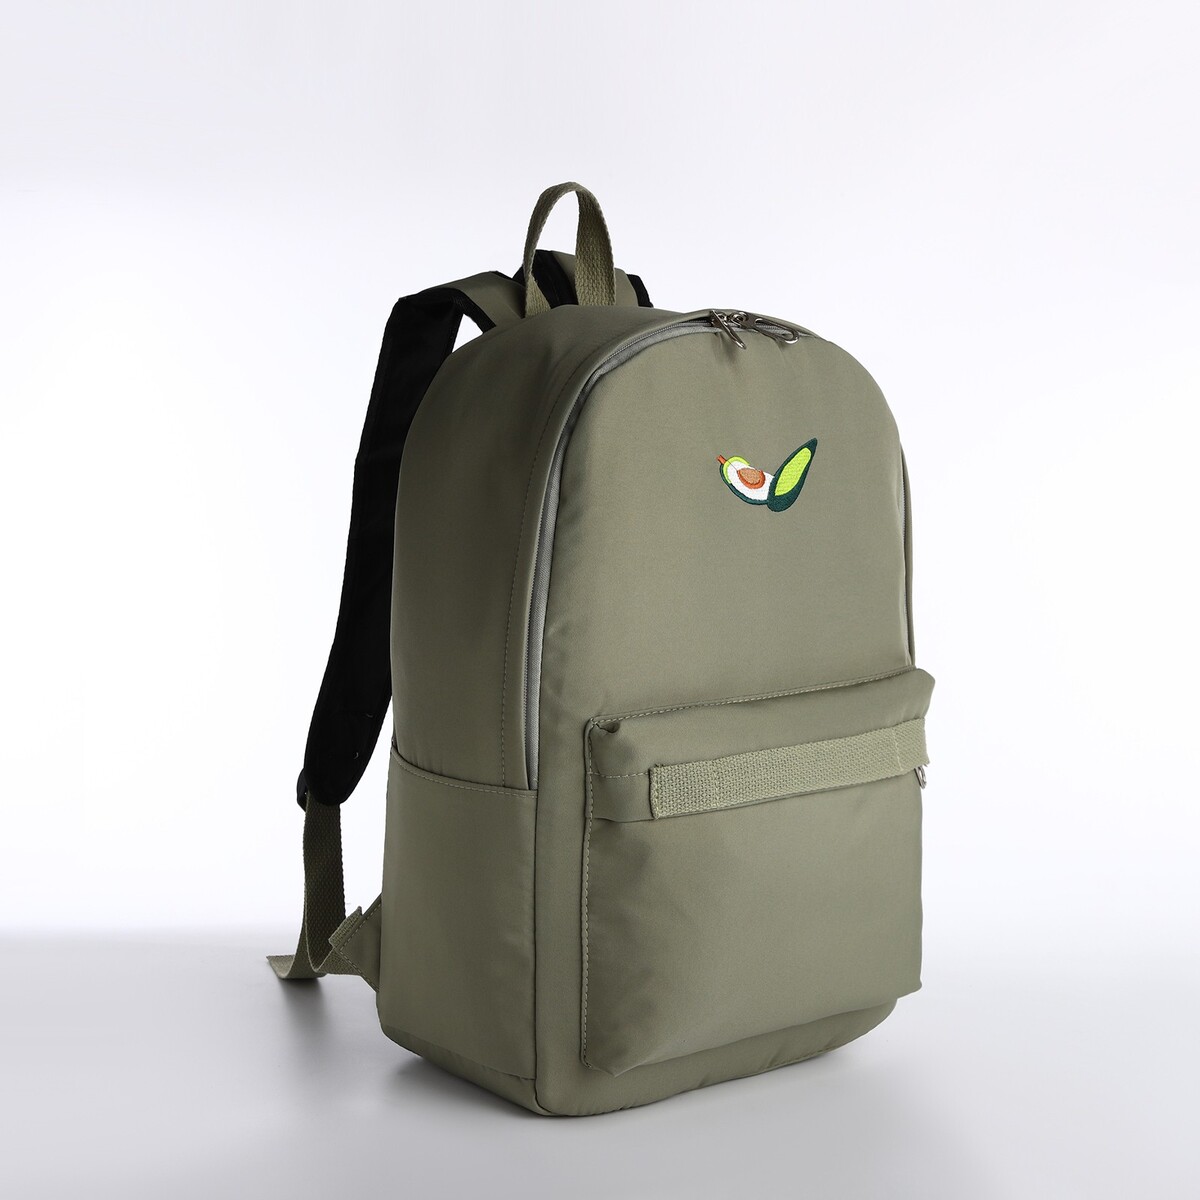 Рюкзак молодежный из текстиля на молнии, наружный карман, сумочка, цвет зеленый рюкзак молодежный из текстиля на молнии водонепроницаемый наружный карман желтый